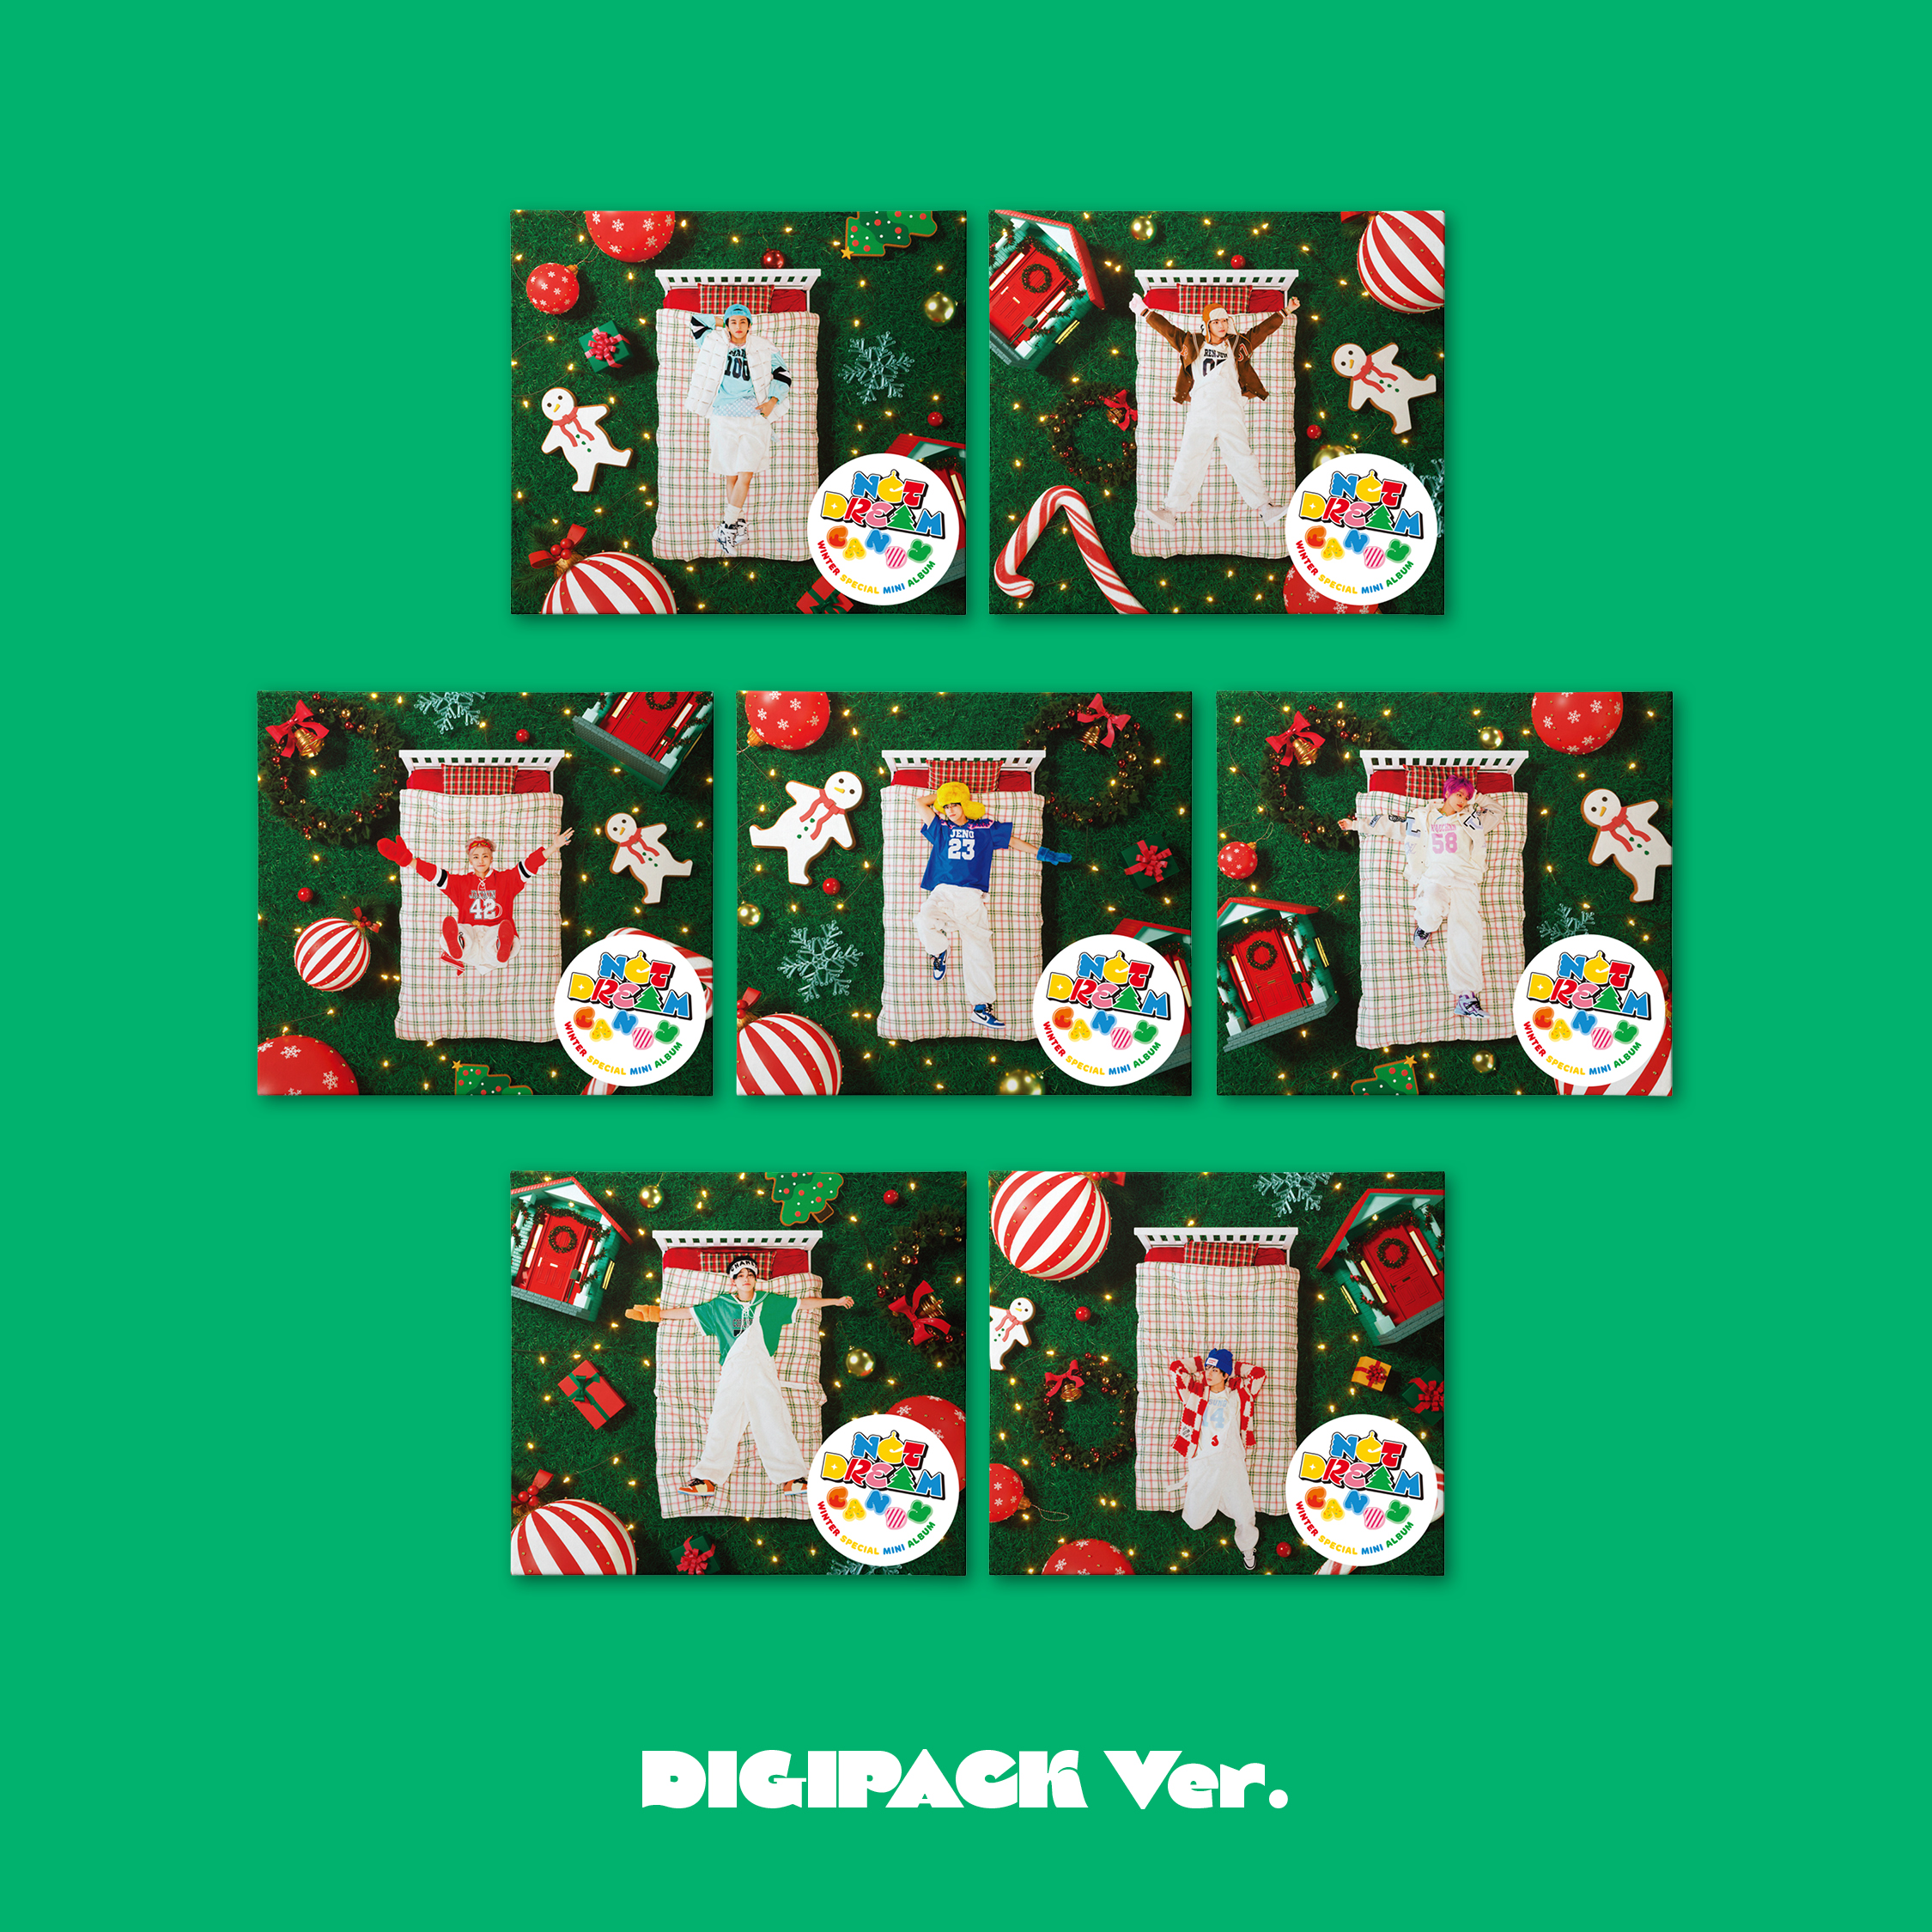 [全款 裸专 7站联合 6K] NCT DREAM - Winter Special Mini Album [Candy] (Digipack Ver.) (Random Ver.) _钟辰乐吧_ChenLeBar